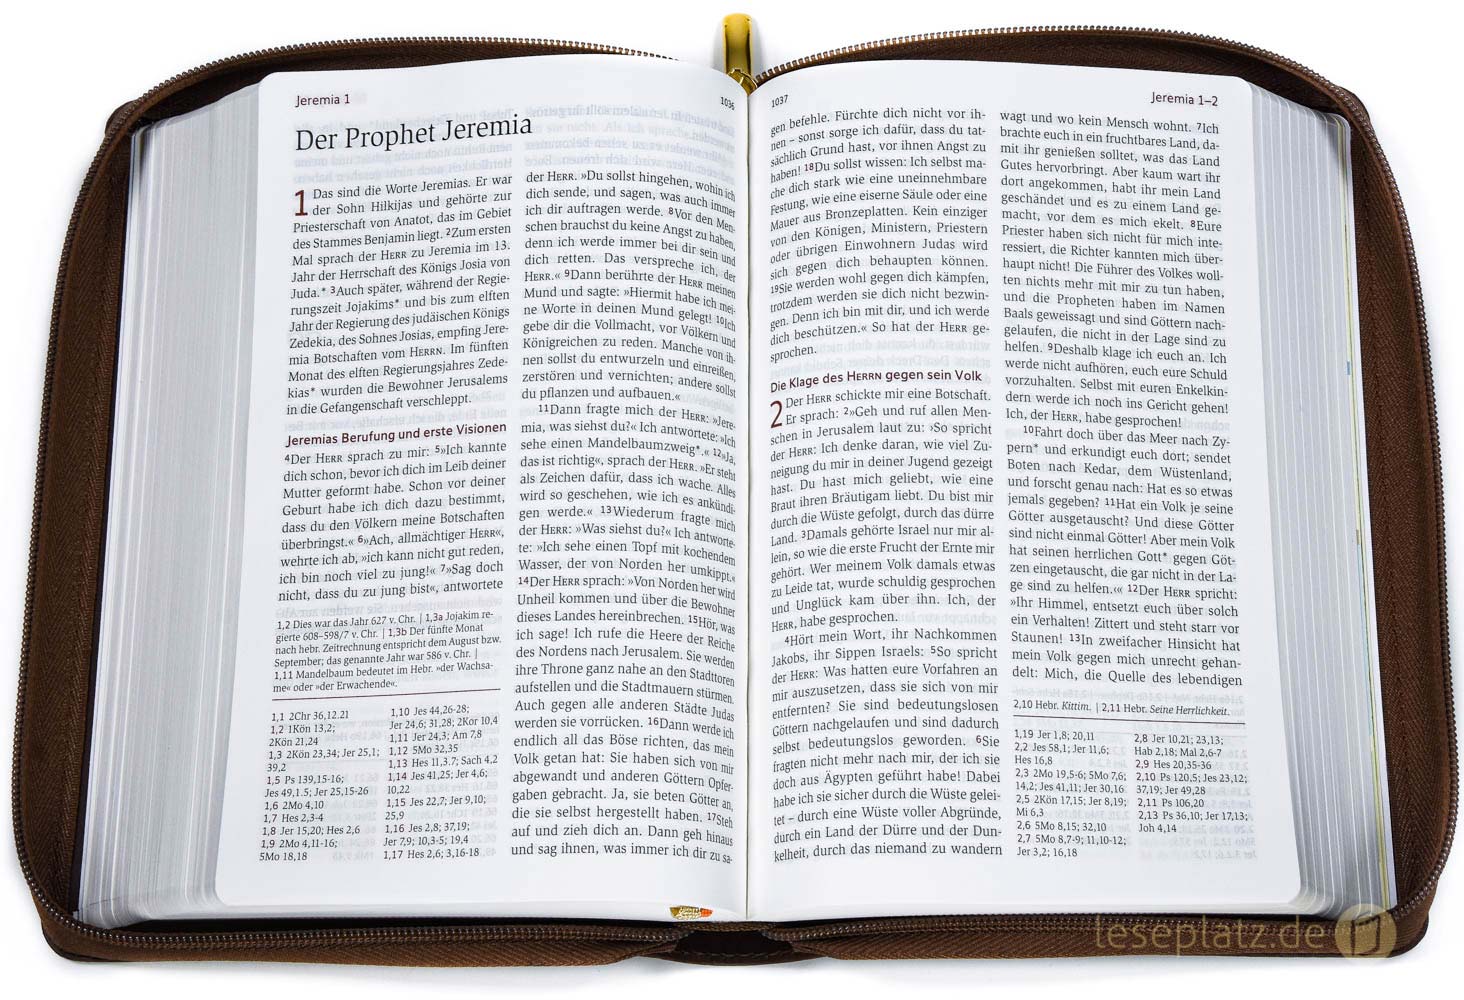 Neues Leben. Die Bibel - Standardausgabe - ital. Kunstleder braun, mit Reißverschluss